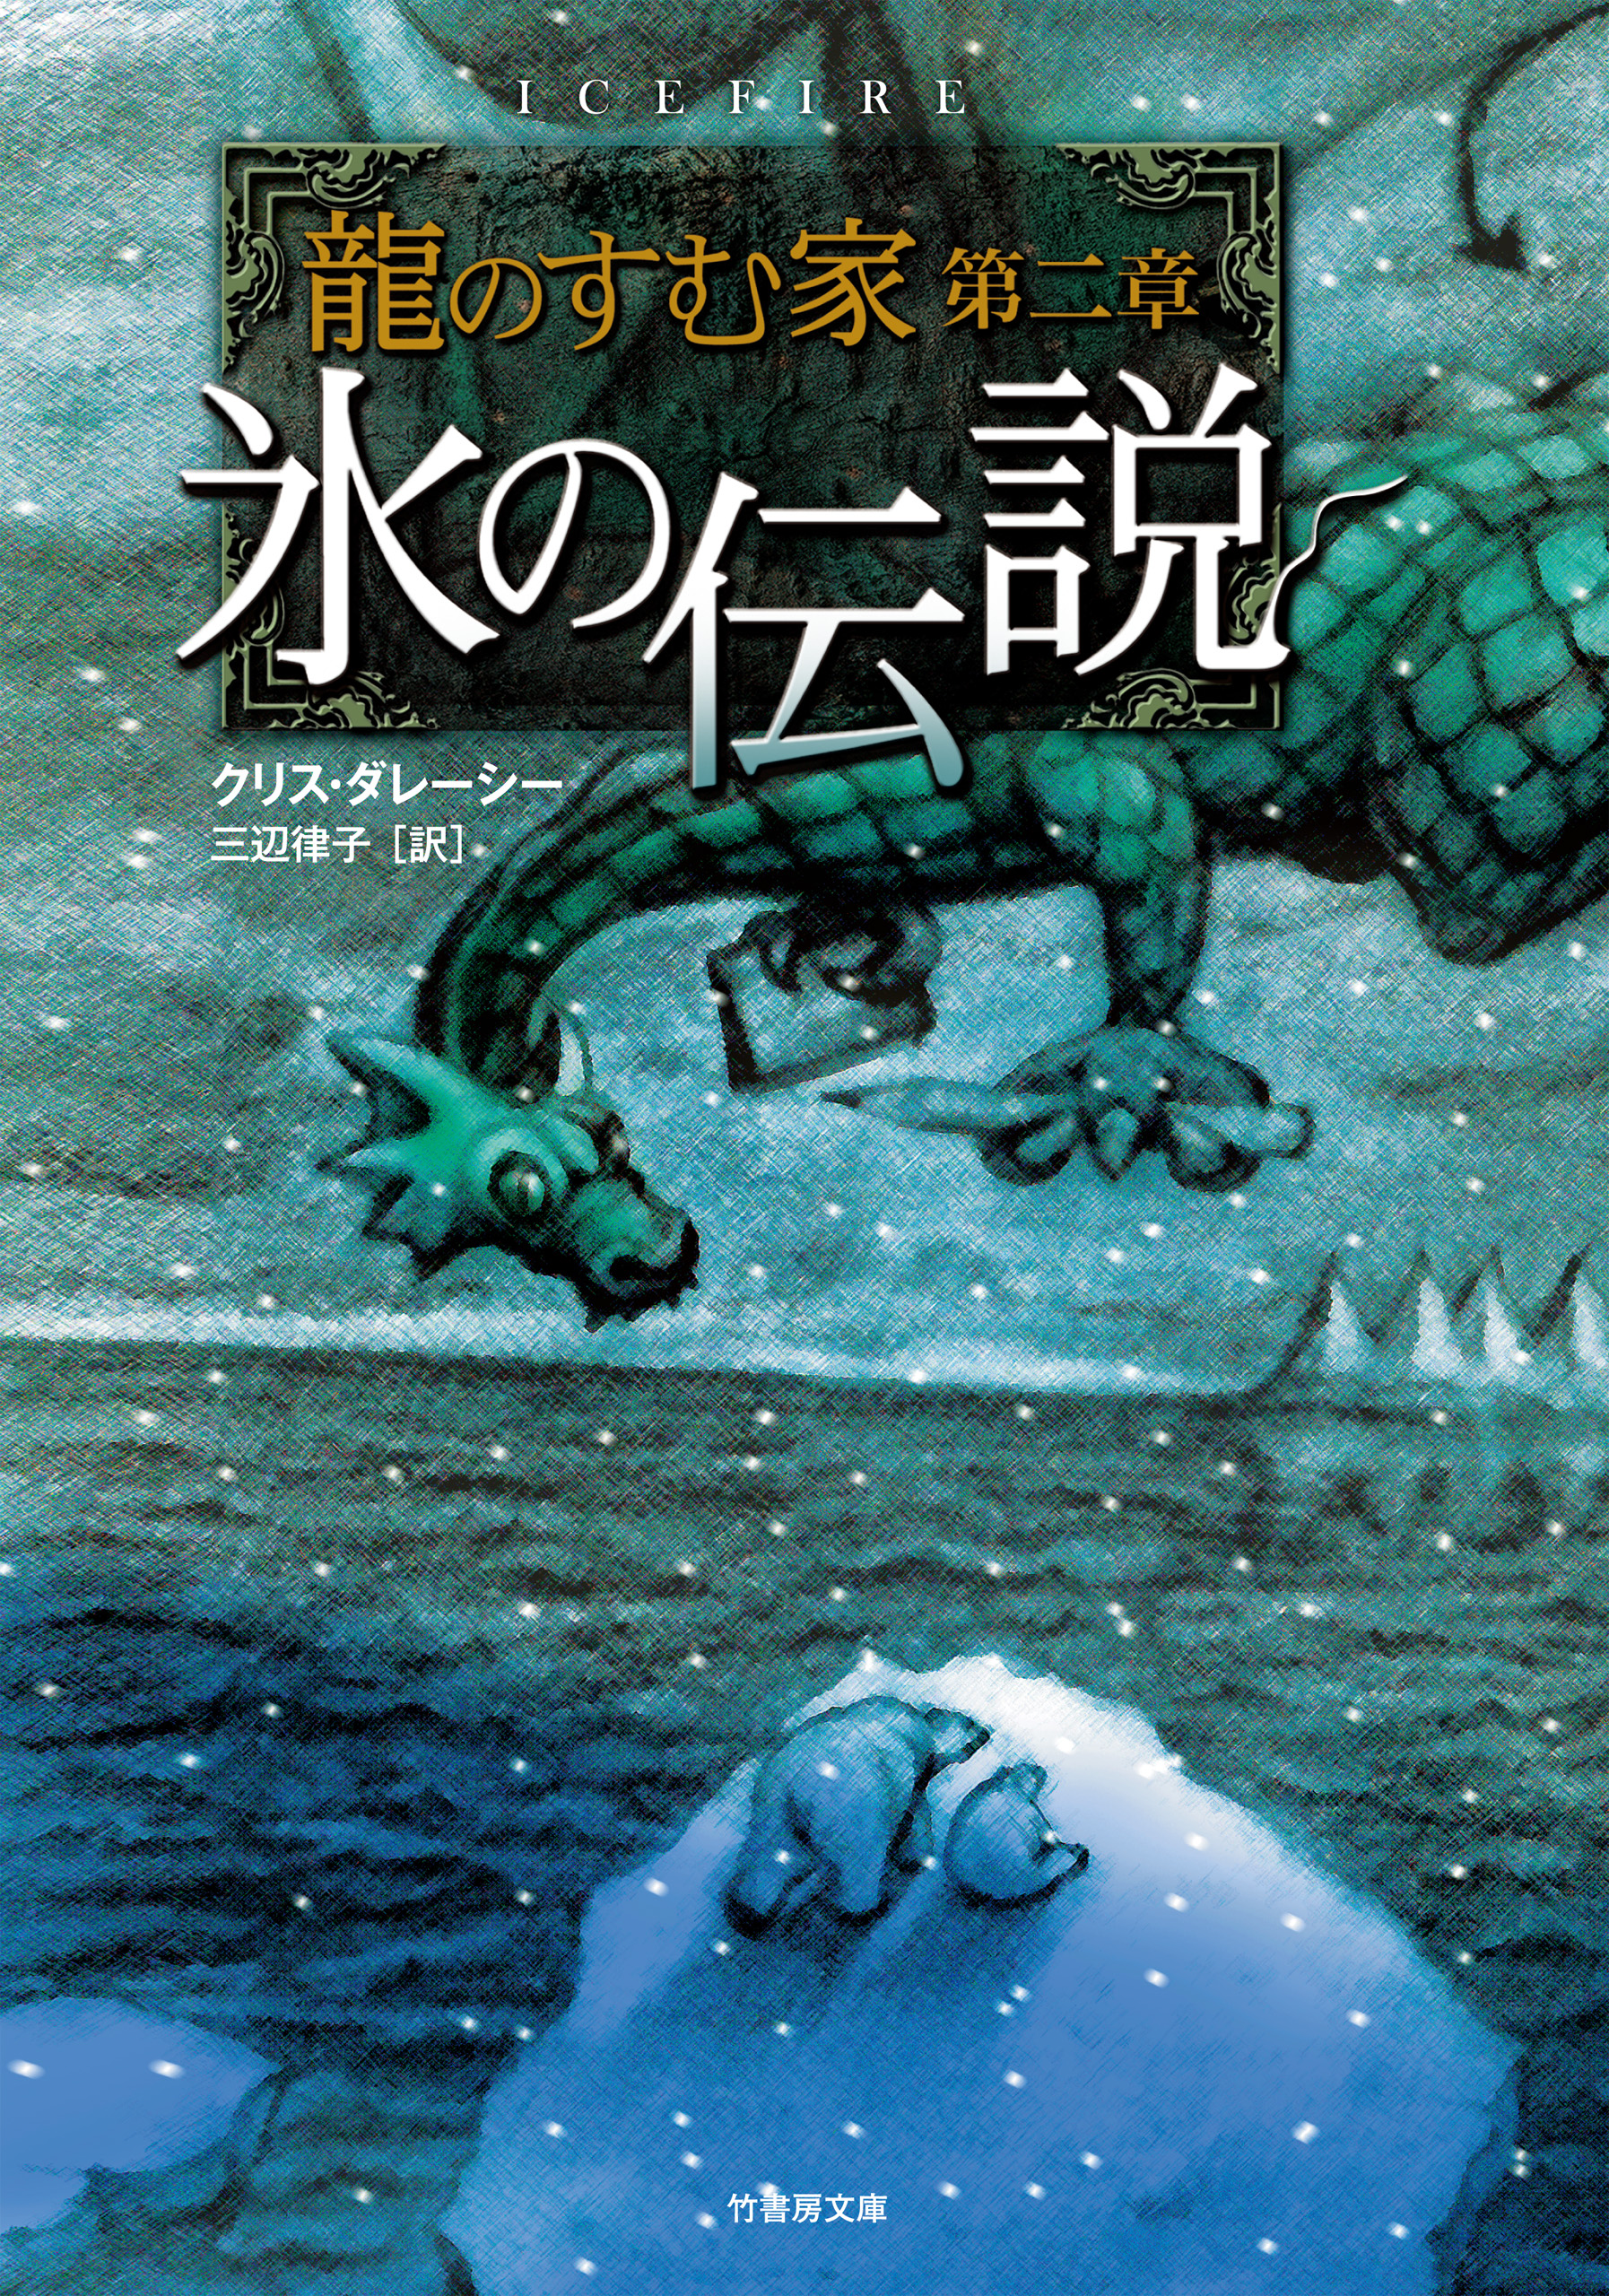 龍のすむ家 第二章 氷の伝説 - クリス・ダレーシー - 漫画・ラノベ